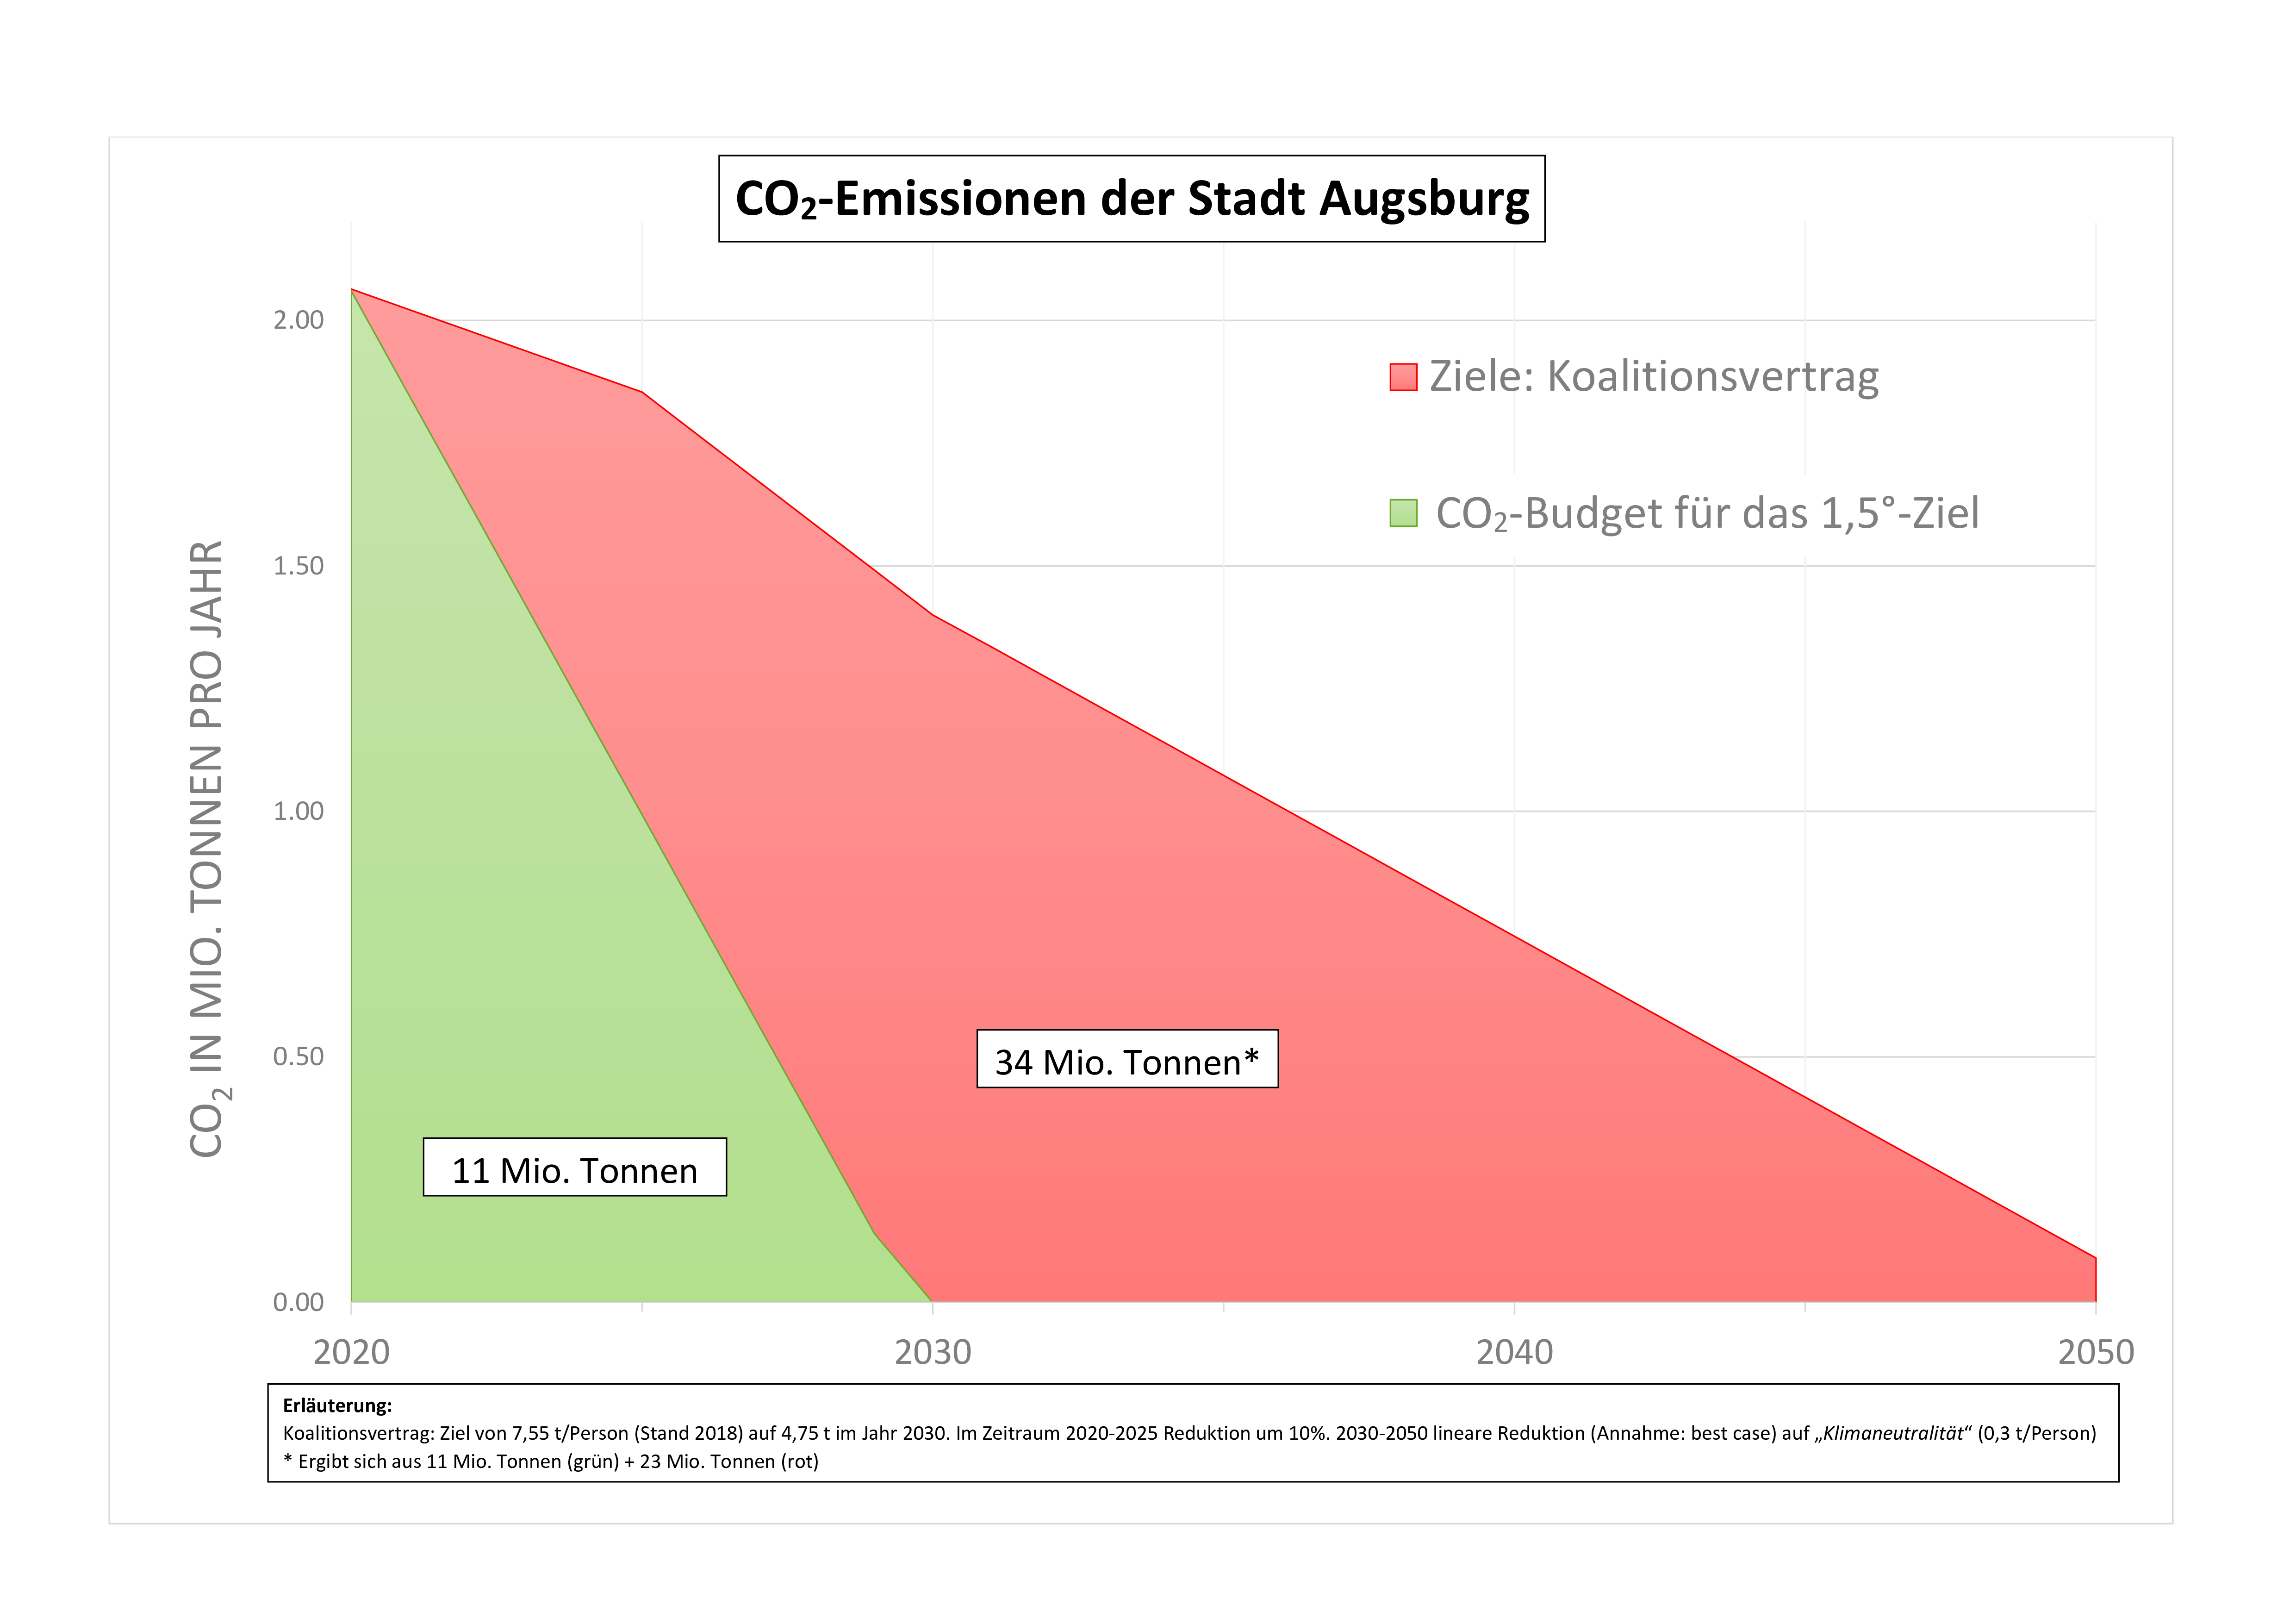 CO₂-Budget und -Emissionen der Stadt Augsburg